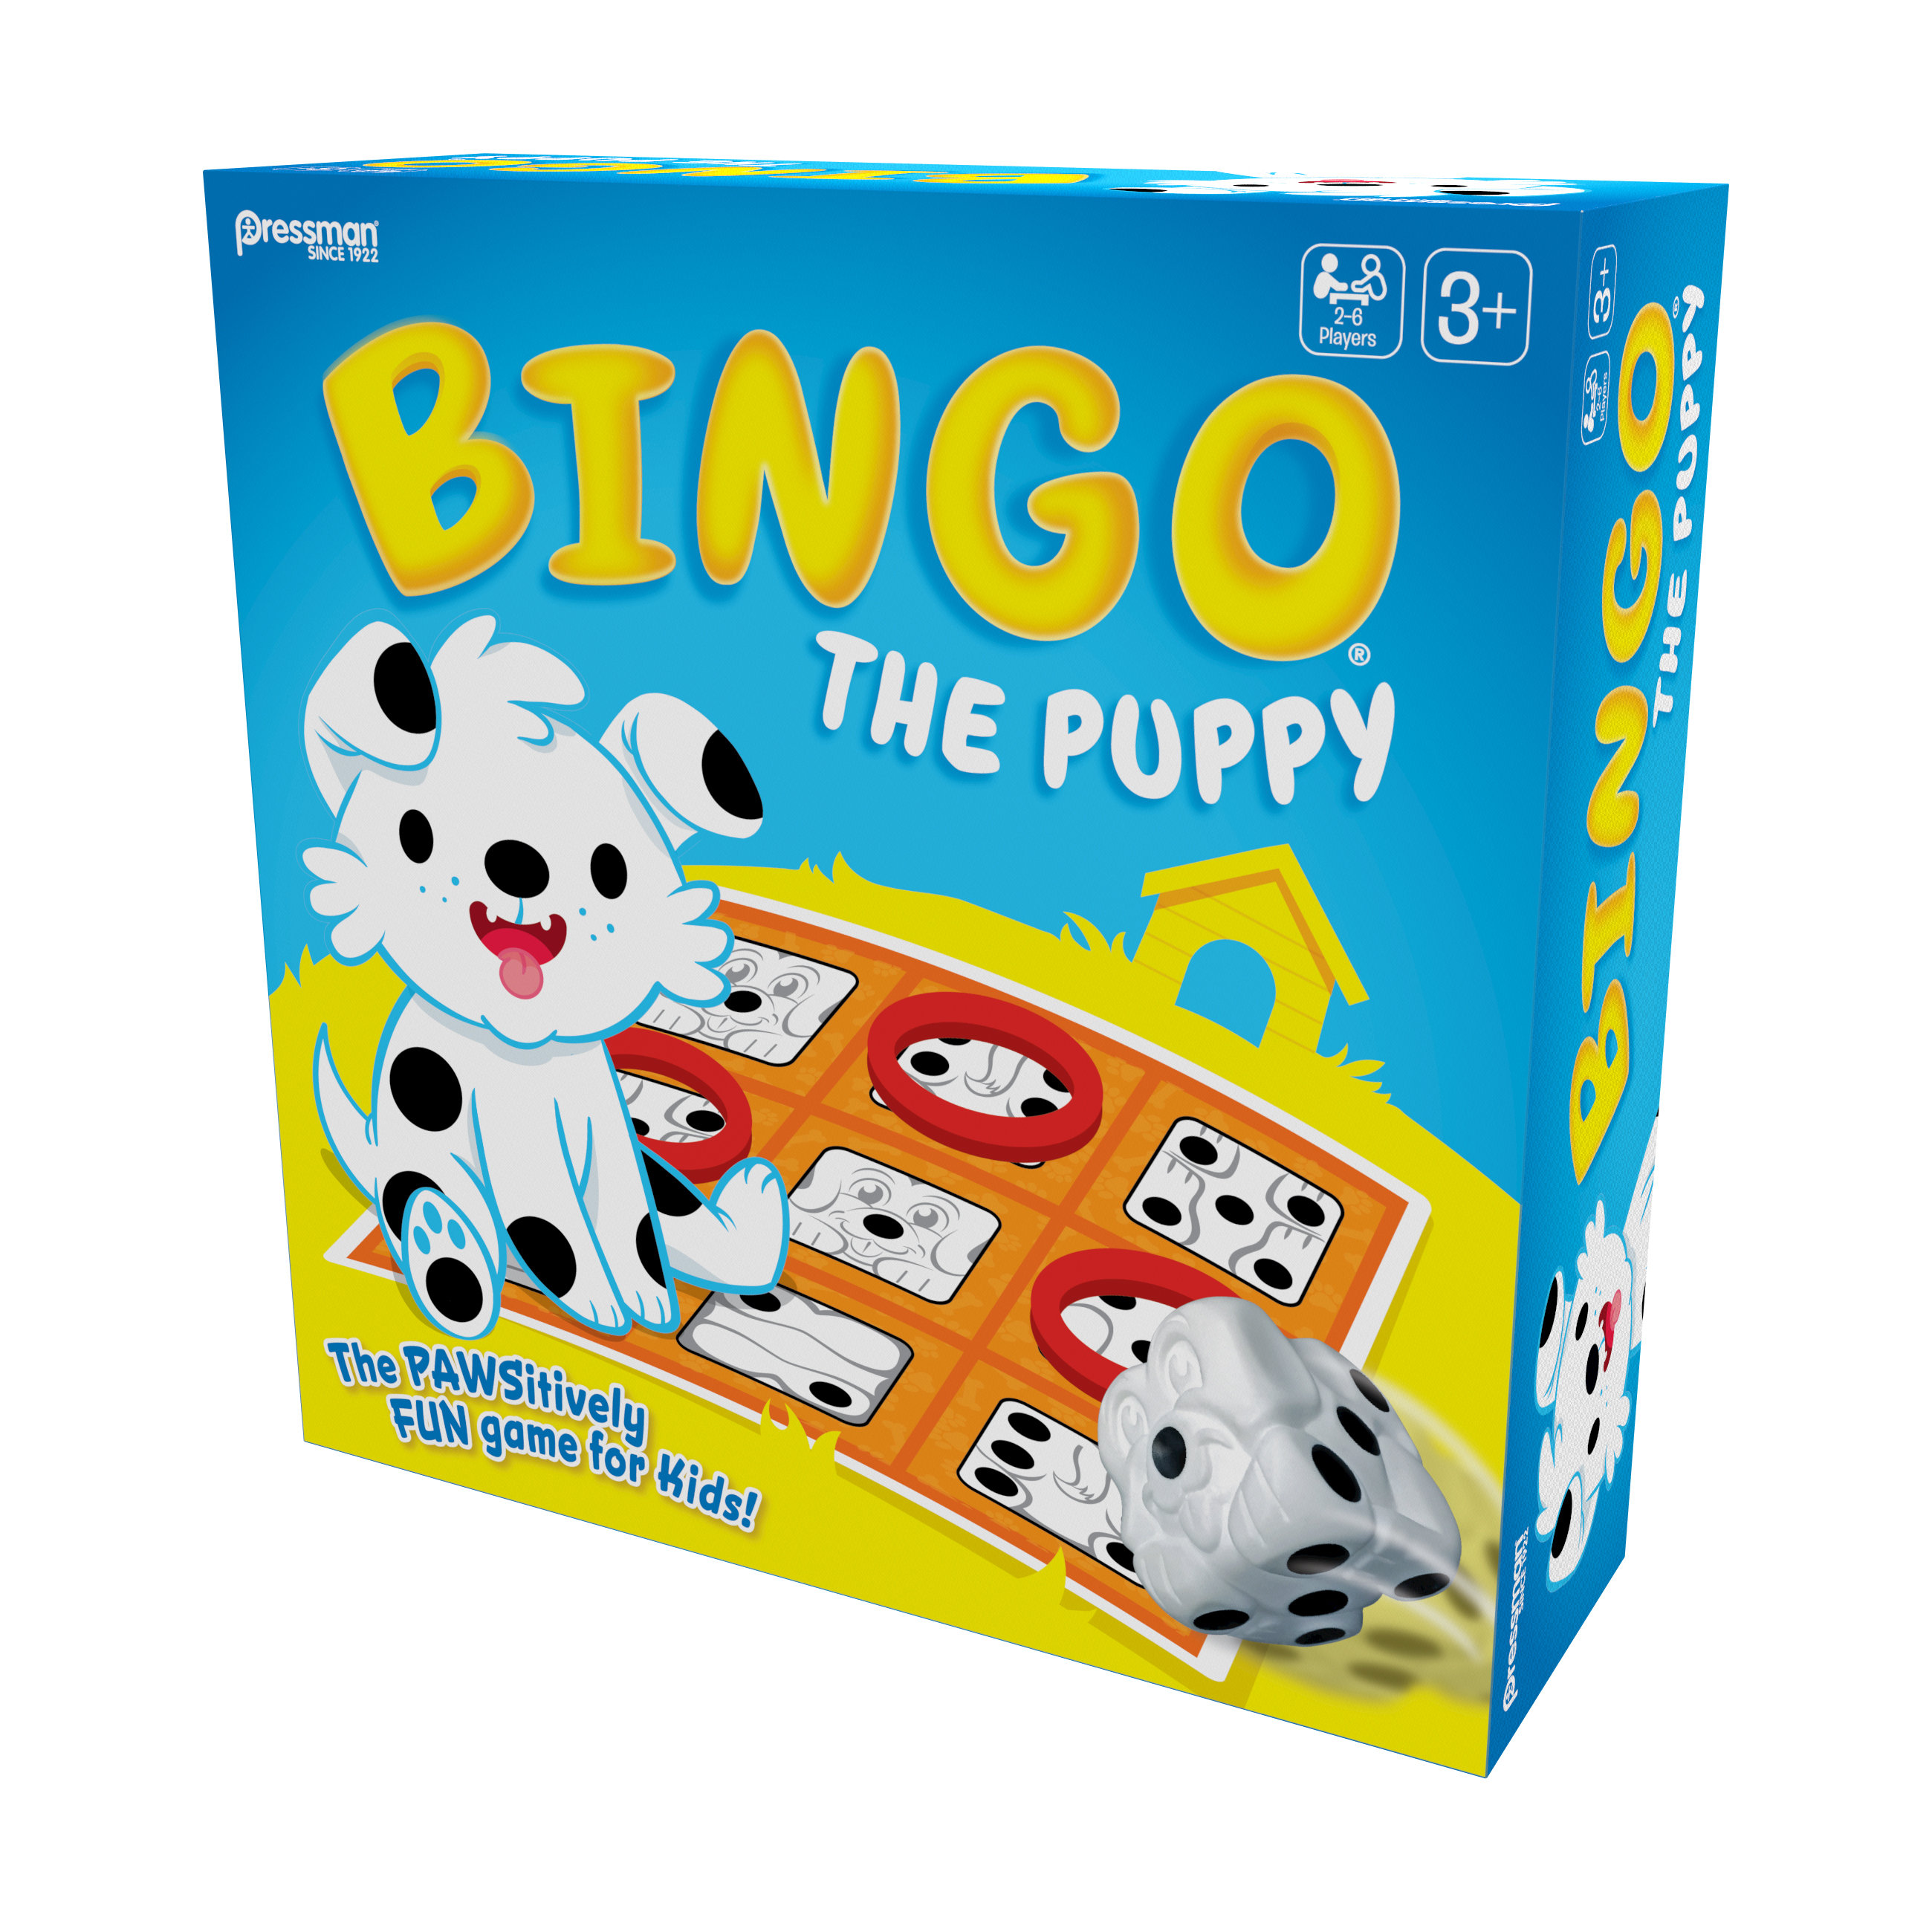 Pressman Toys 6 Player Bingo & Reviews